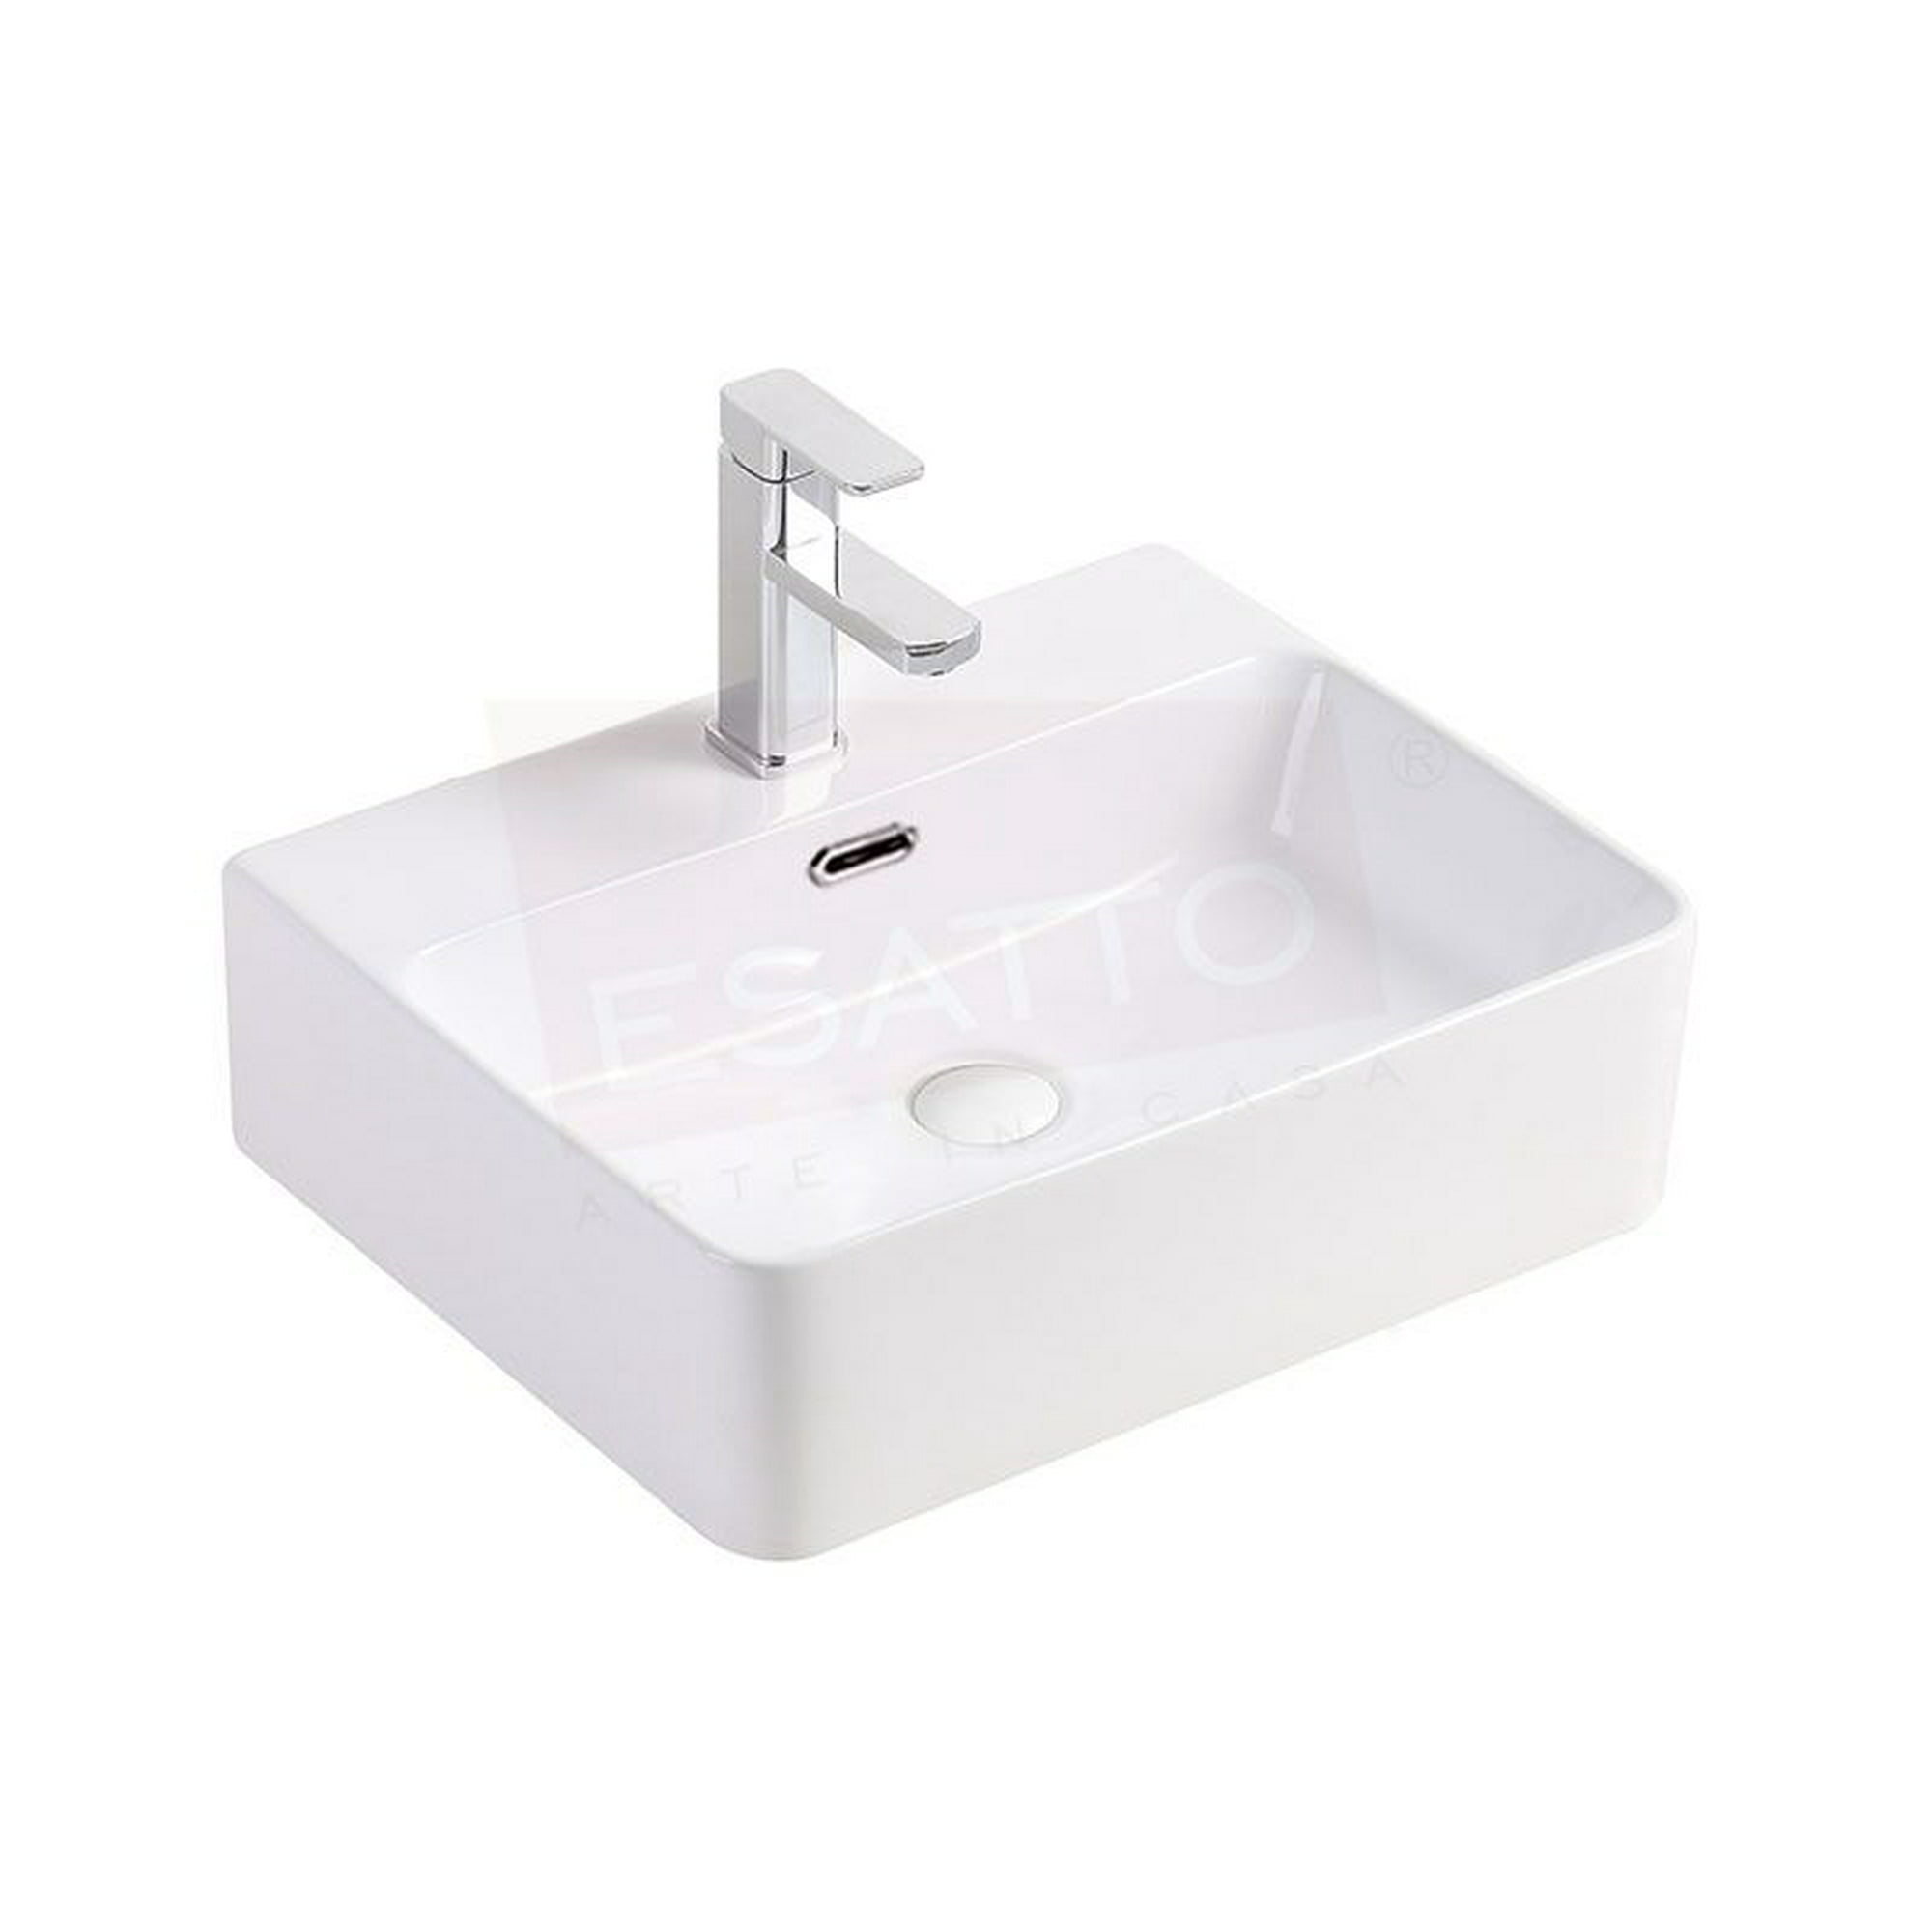 Esatto® kit zigna c paquete de precio mejorado con lavabo, llave y desagües listo para instalar esatto paquete completo de lavabo para baño